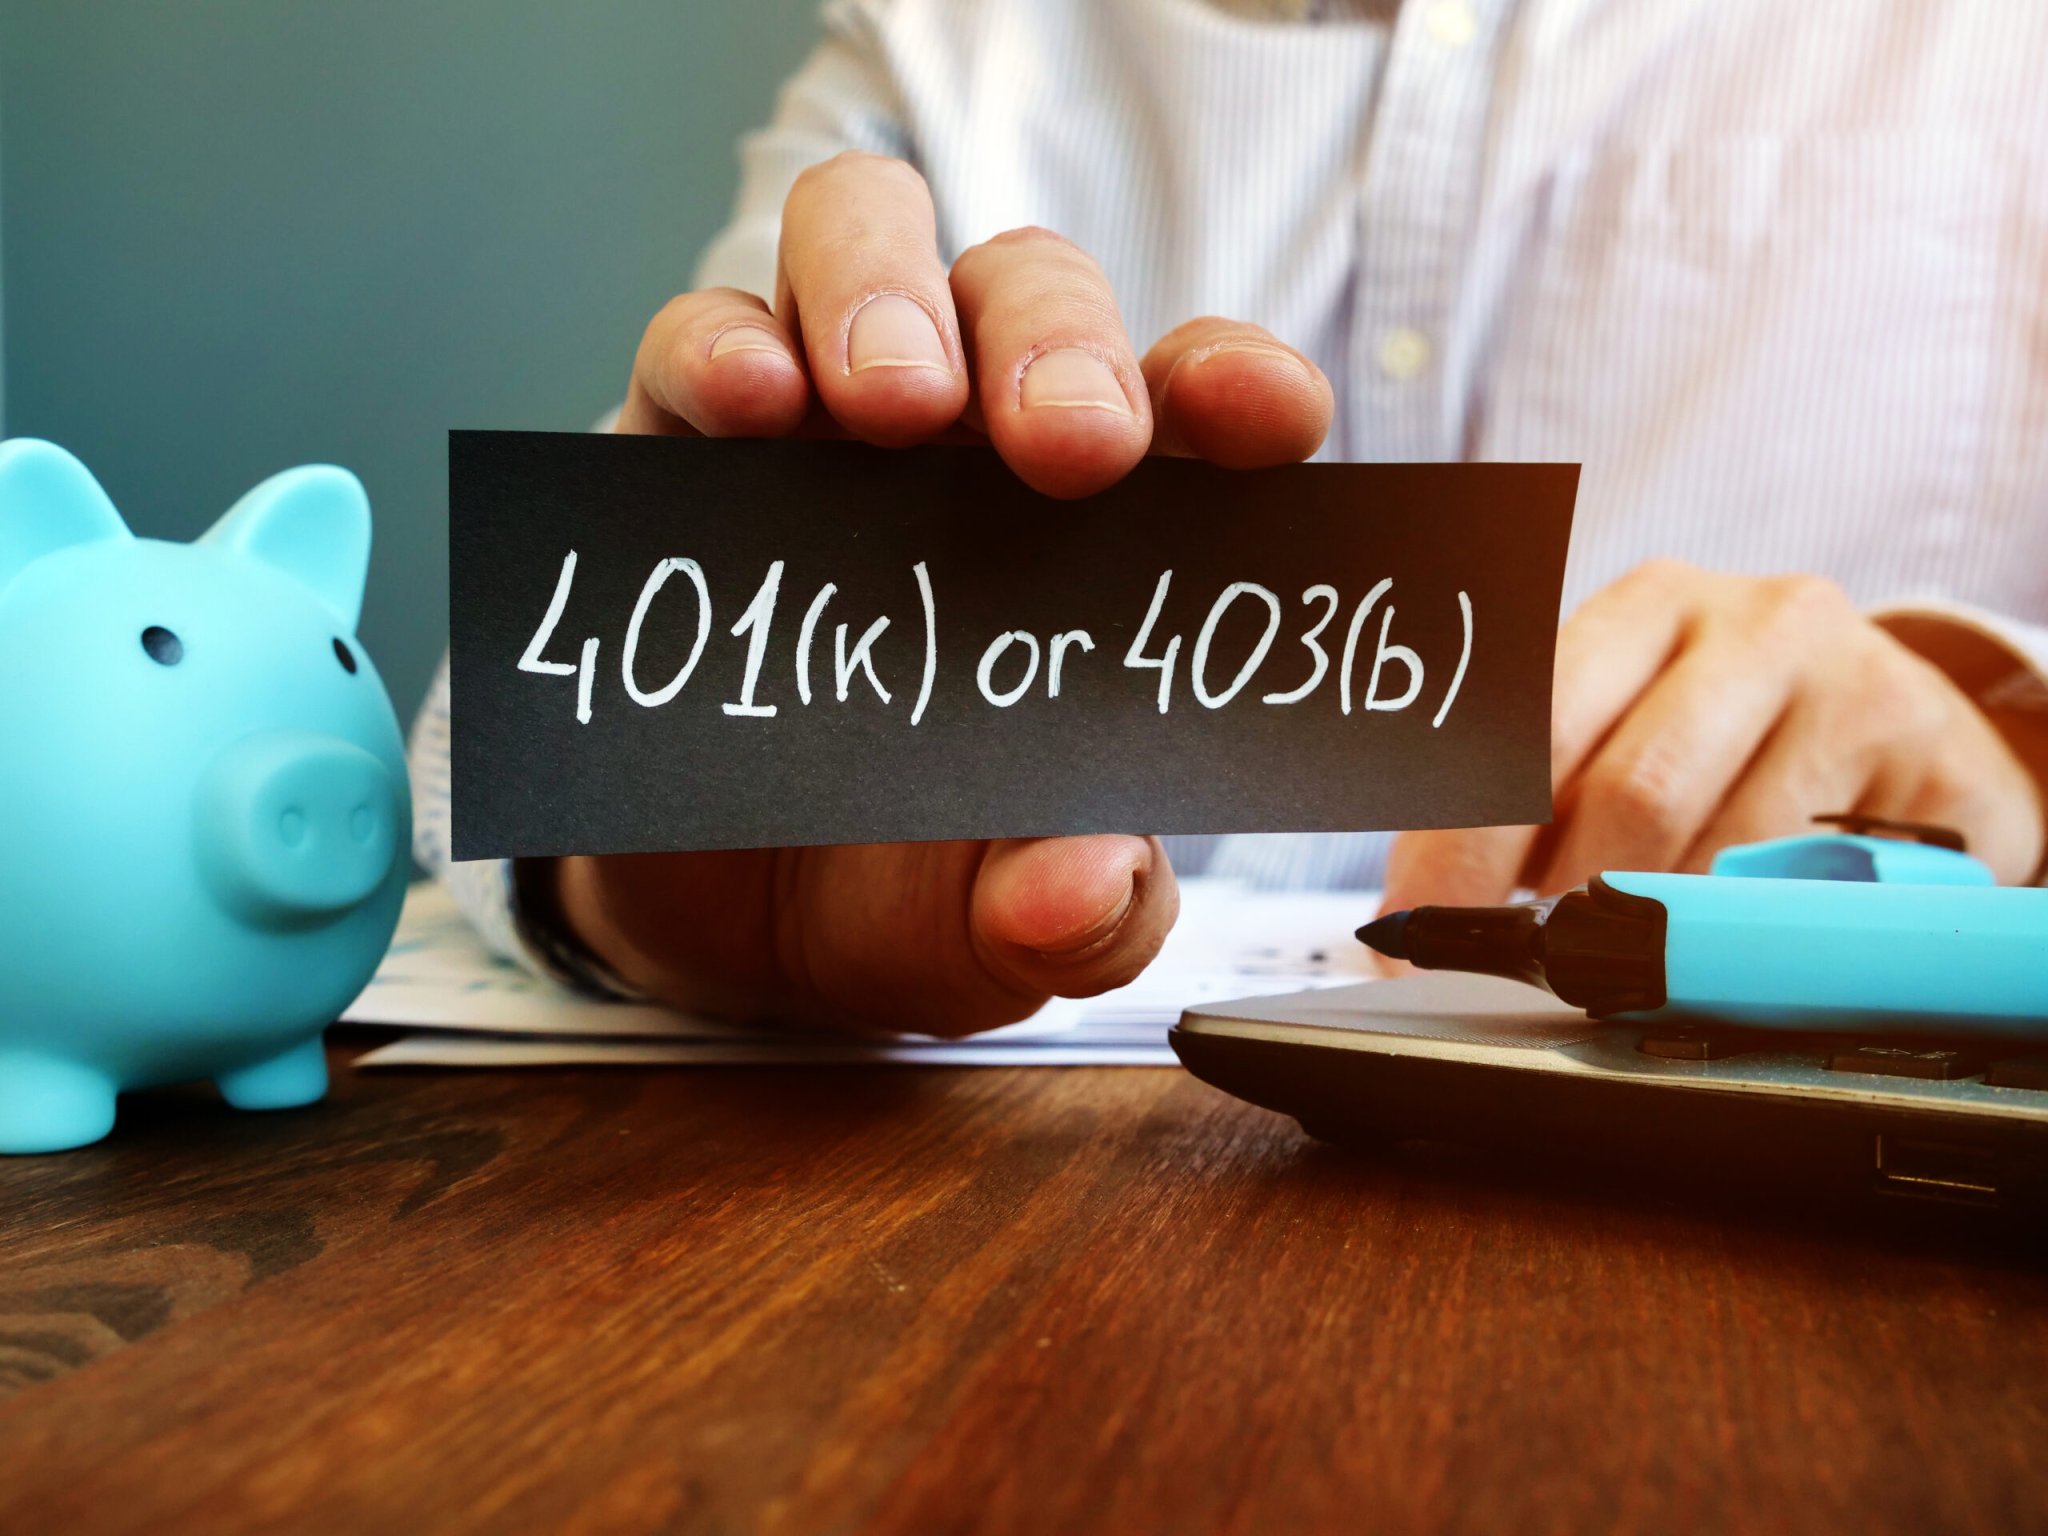 403b vs 401k Plans: What’s Better For Retirement